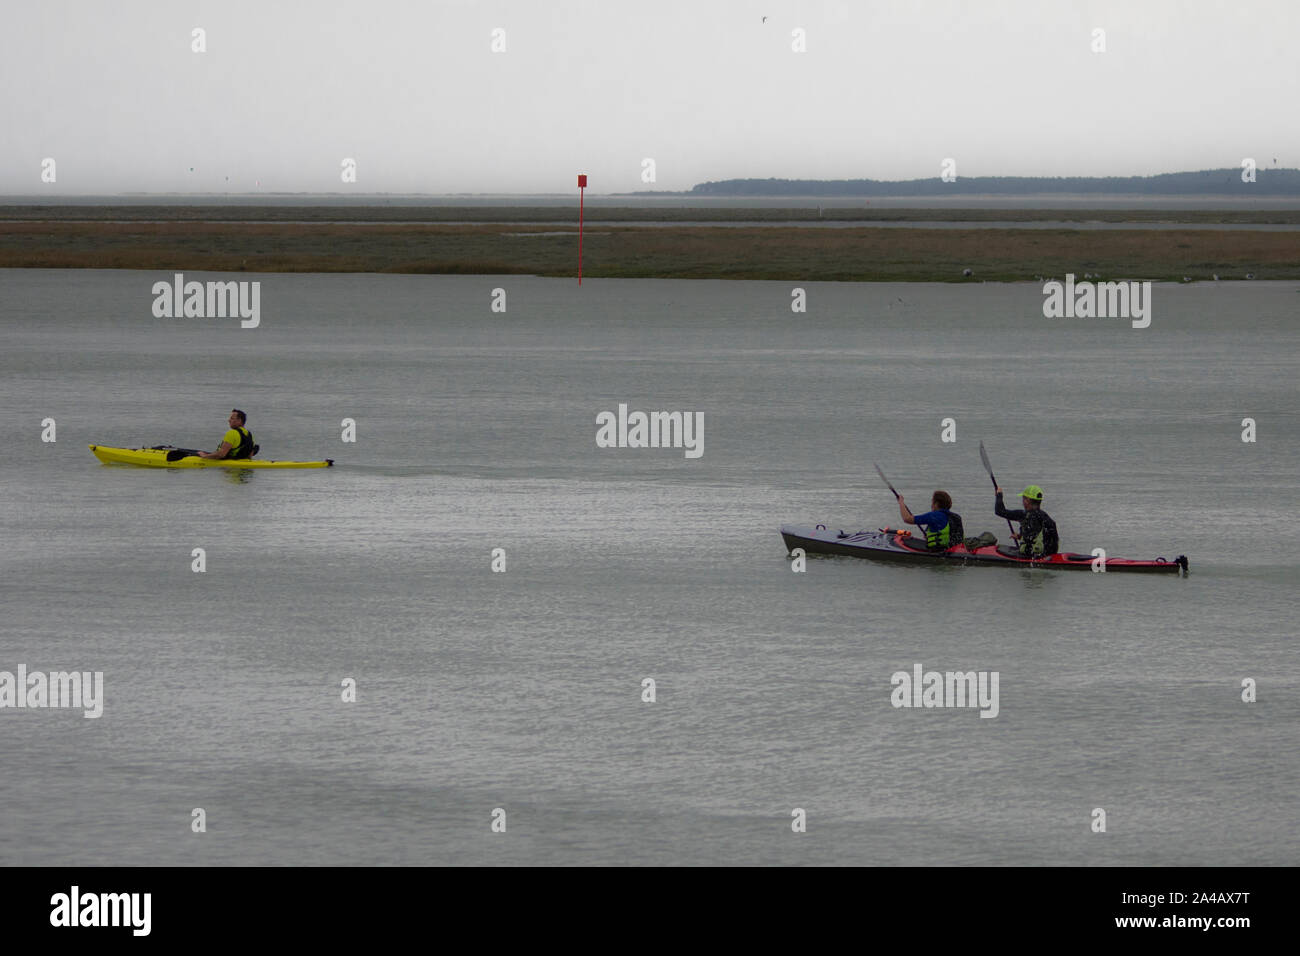 La baie de somme, kayak et voiliers, ciel nuageux, mer calme, l Stock Photo